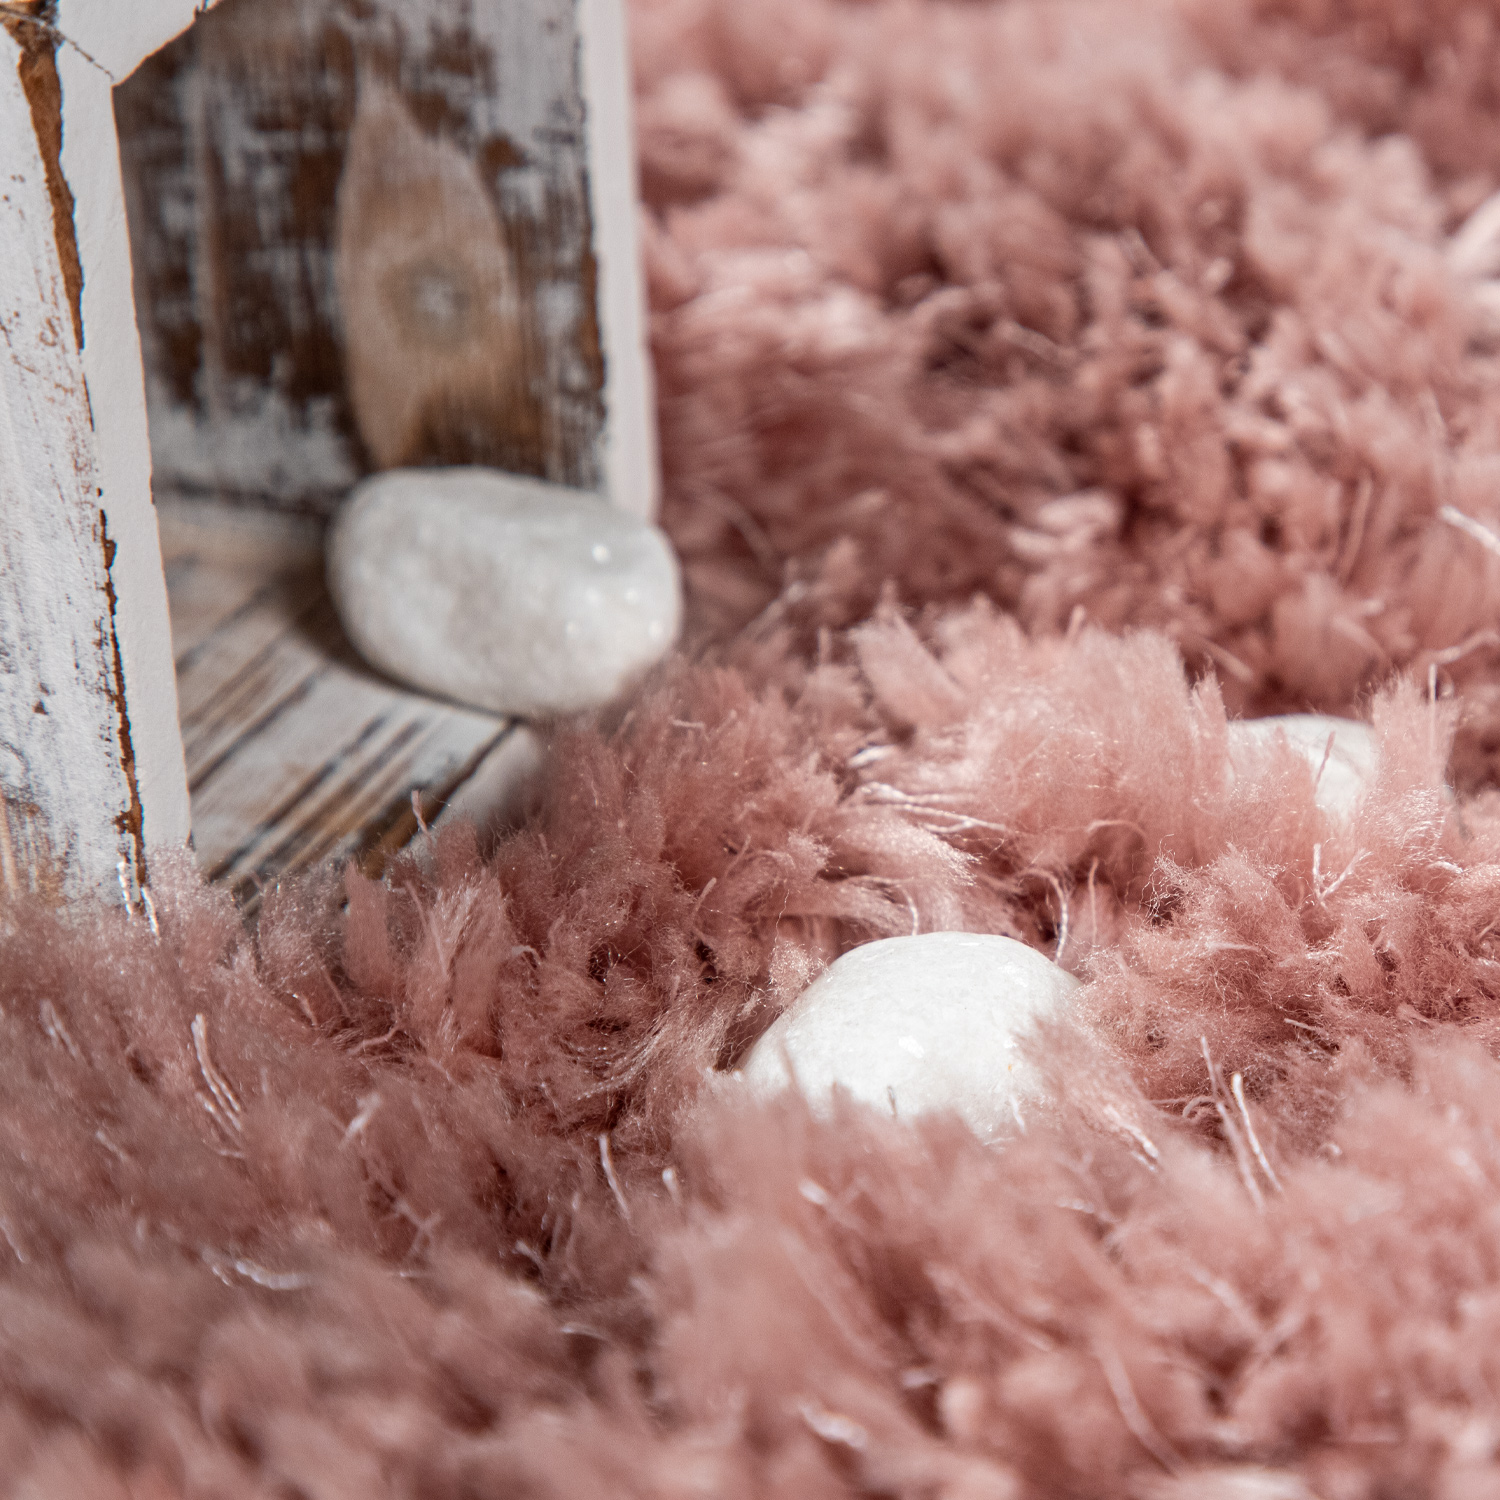 Hochflor-Teppich Alba Pink Modern